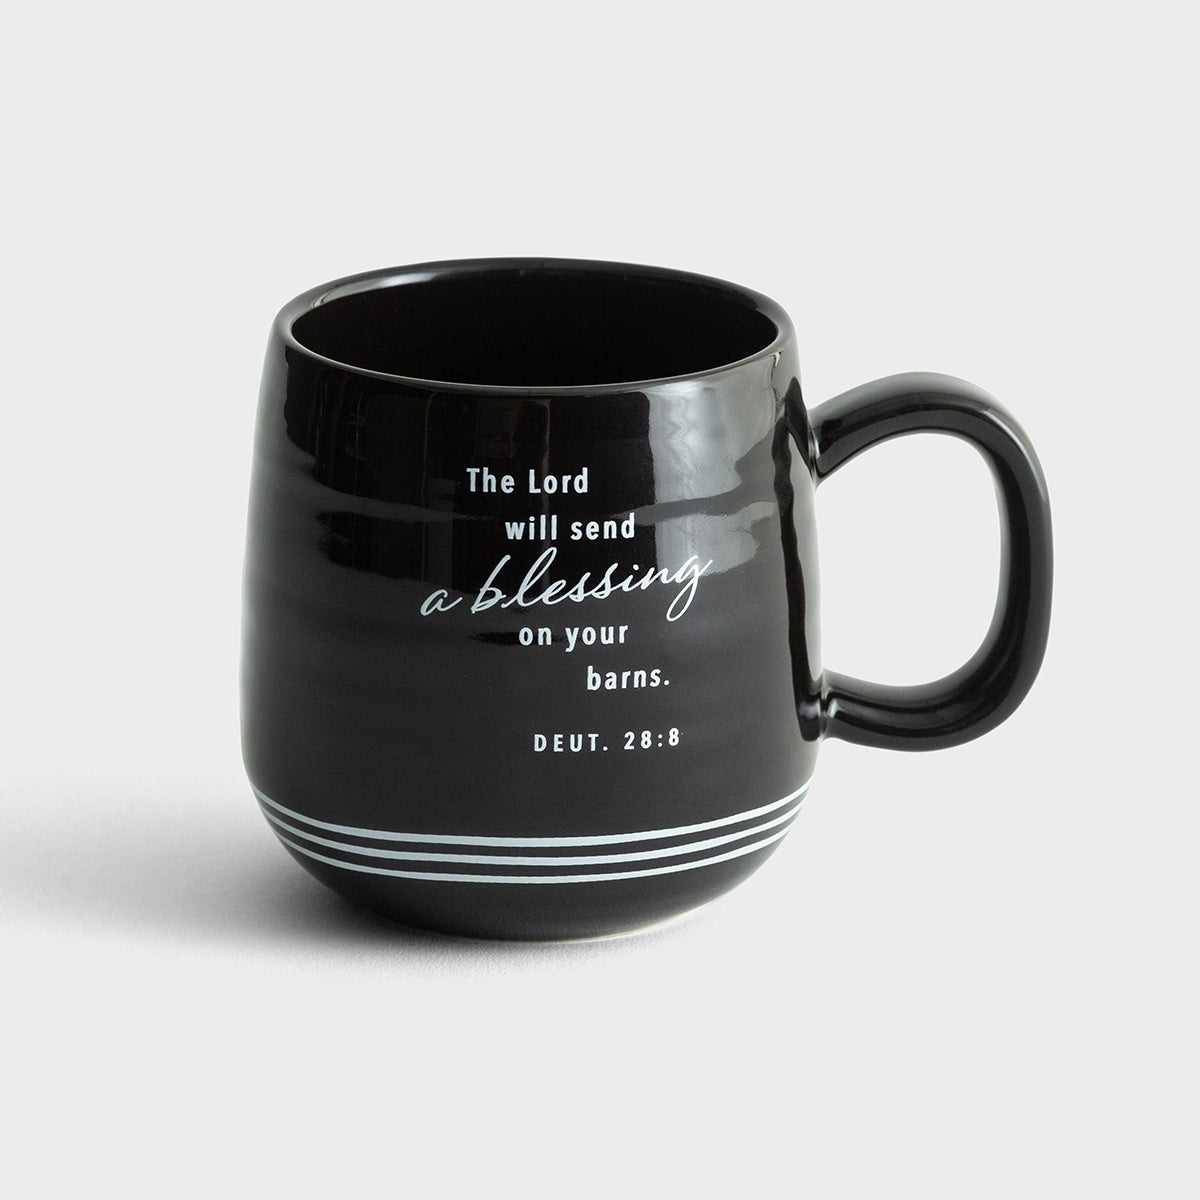 Farm Fresh Faith - Ceramic Mug